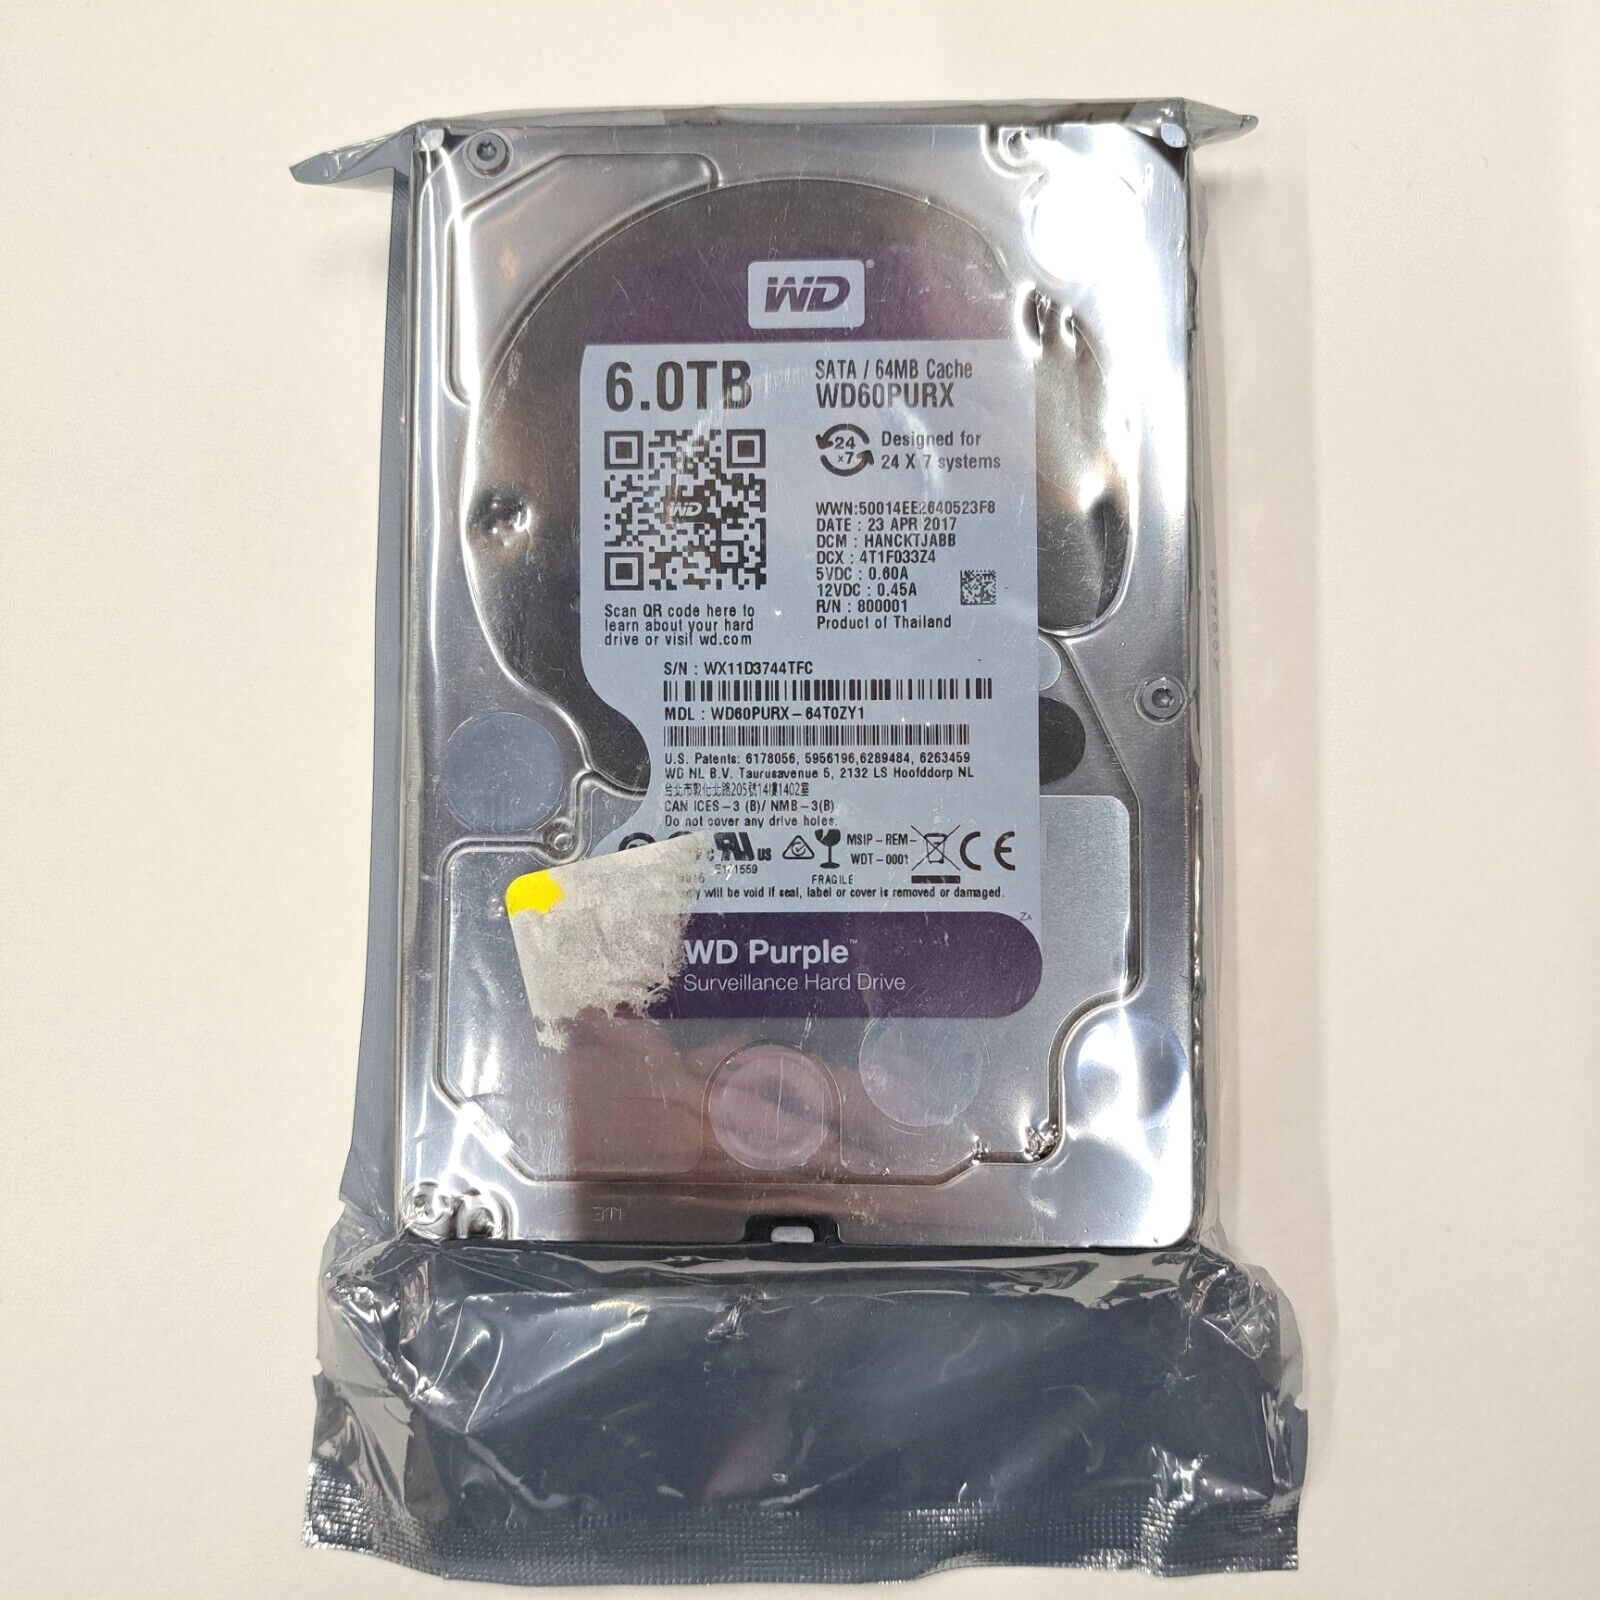 Western Digital Purple 6 TB,Internal,5400 RPM,3.5 inch (WD60PURX) Hard Drive